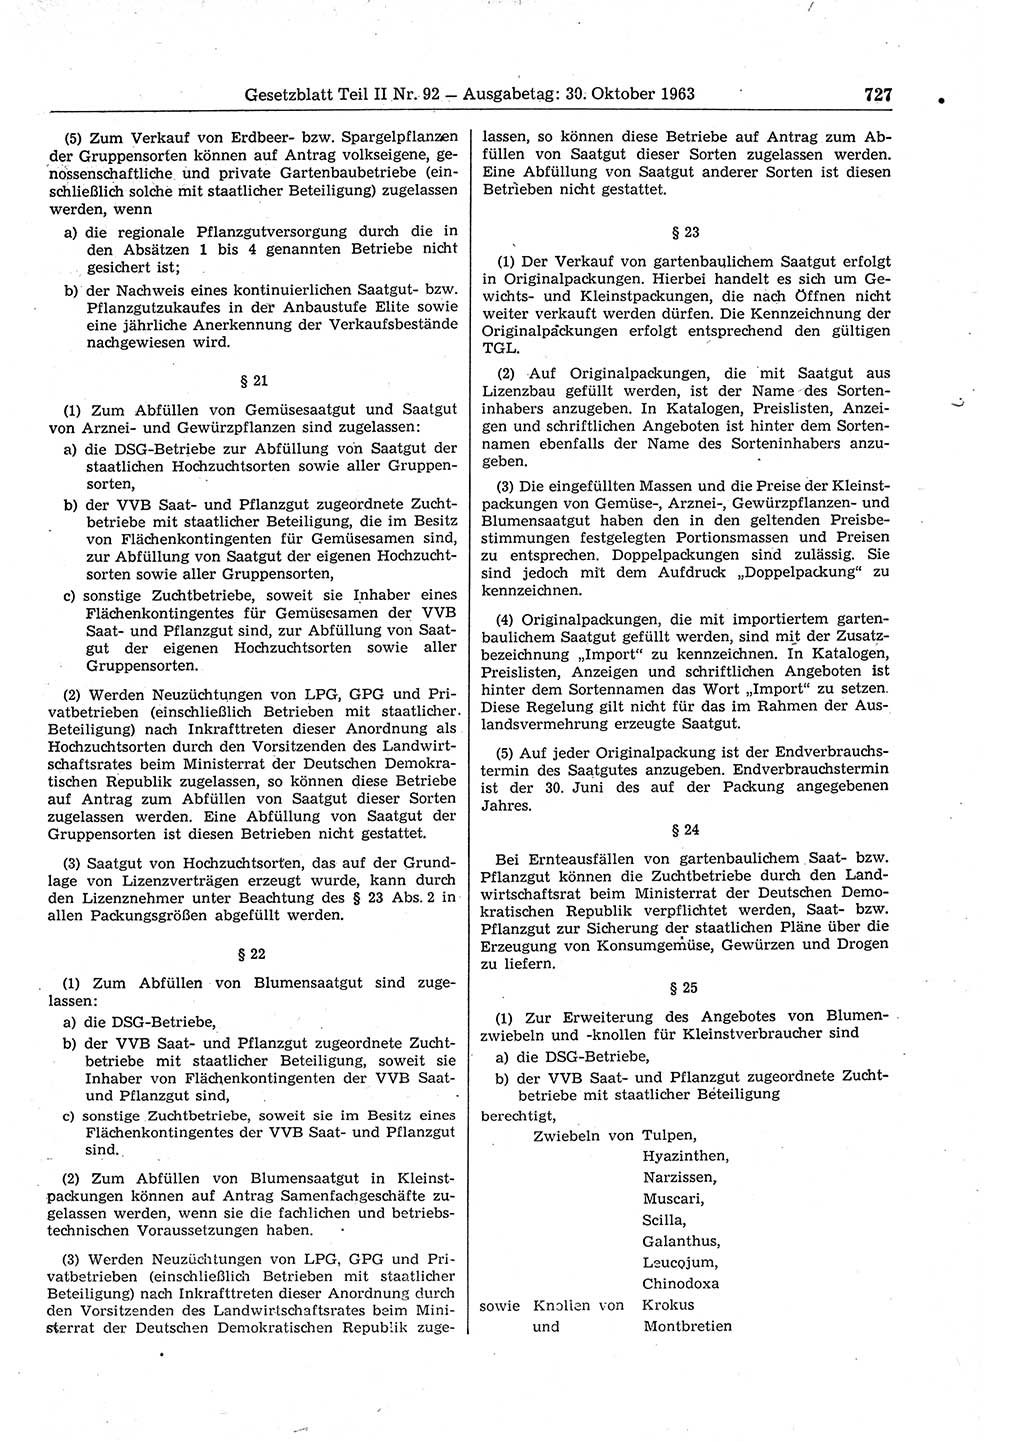 Gesetzblatt (GBl.) der Deutschen Demokratischen Republik (DDR) Teil ⅠⅠ 1963, Seite 727 (GBl. DDR ⅠⅠ 1963, S. 727)